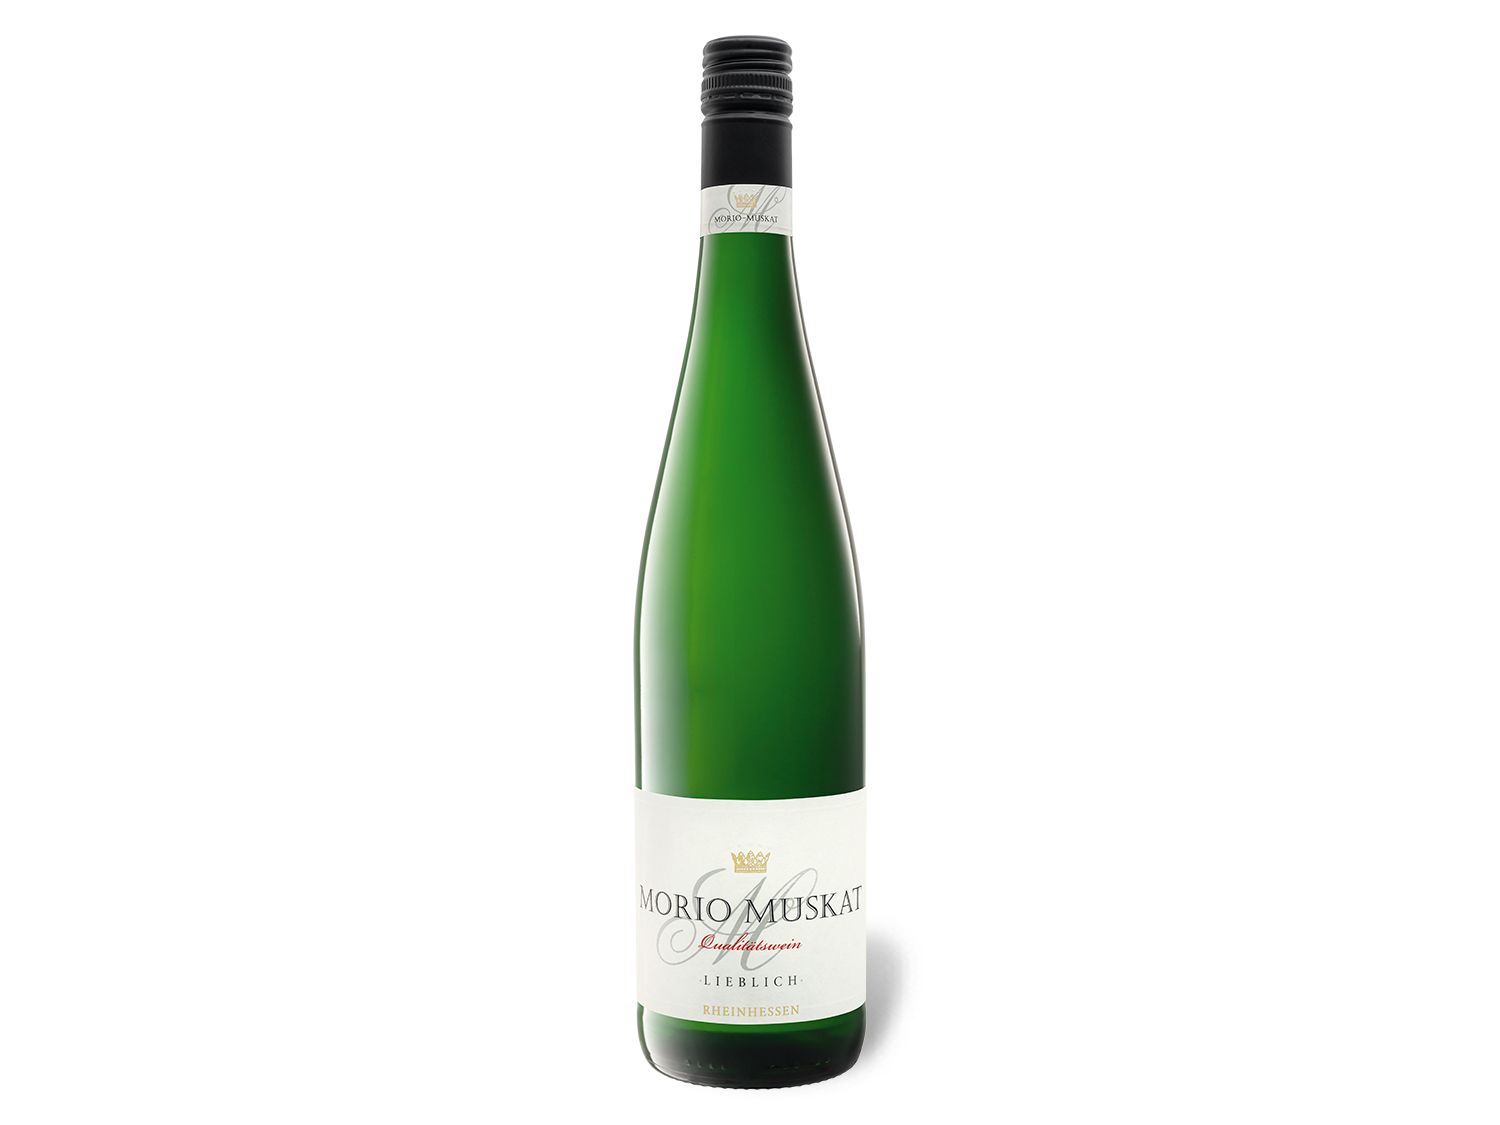 Morio-Muskat lieblich, 2021 Weißwein QbA Rheinhessen